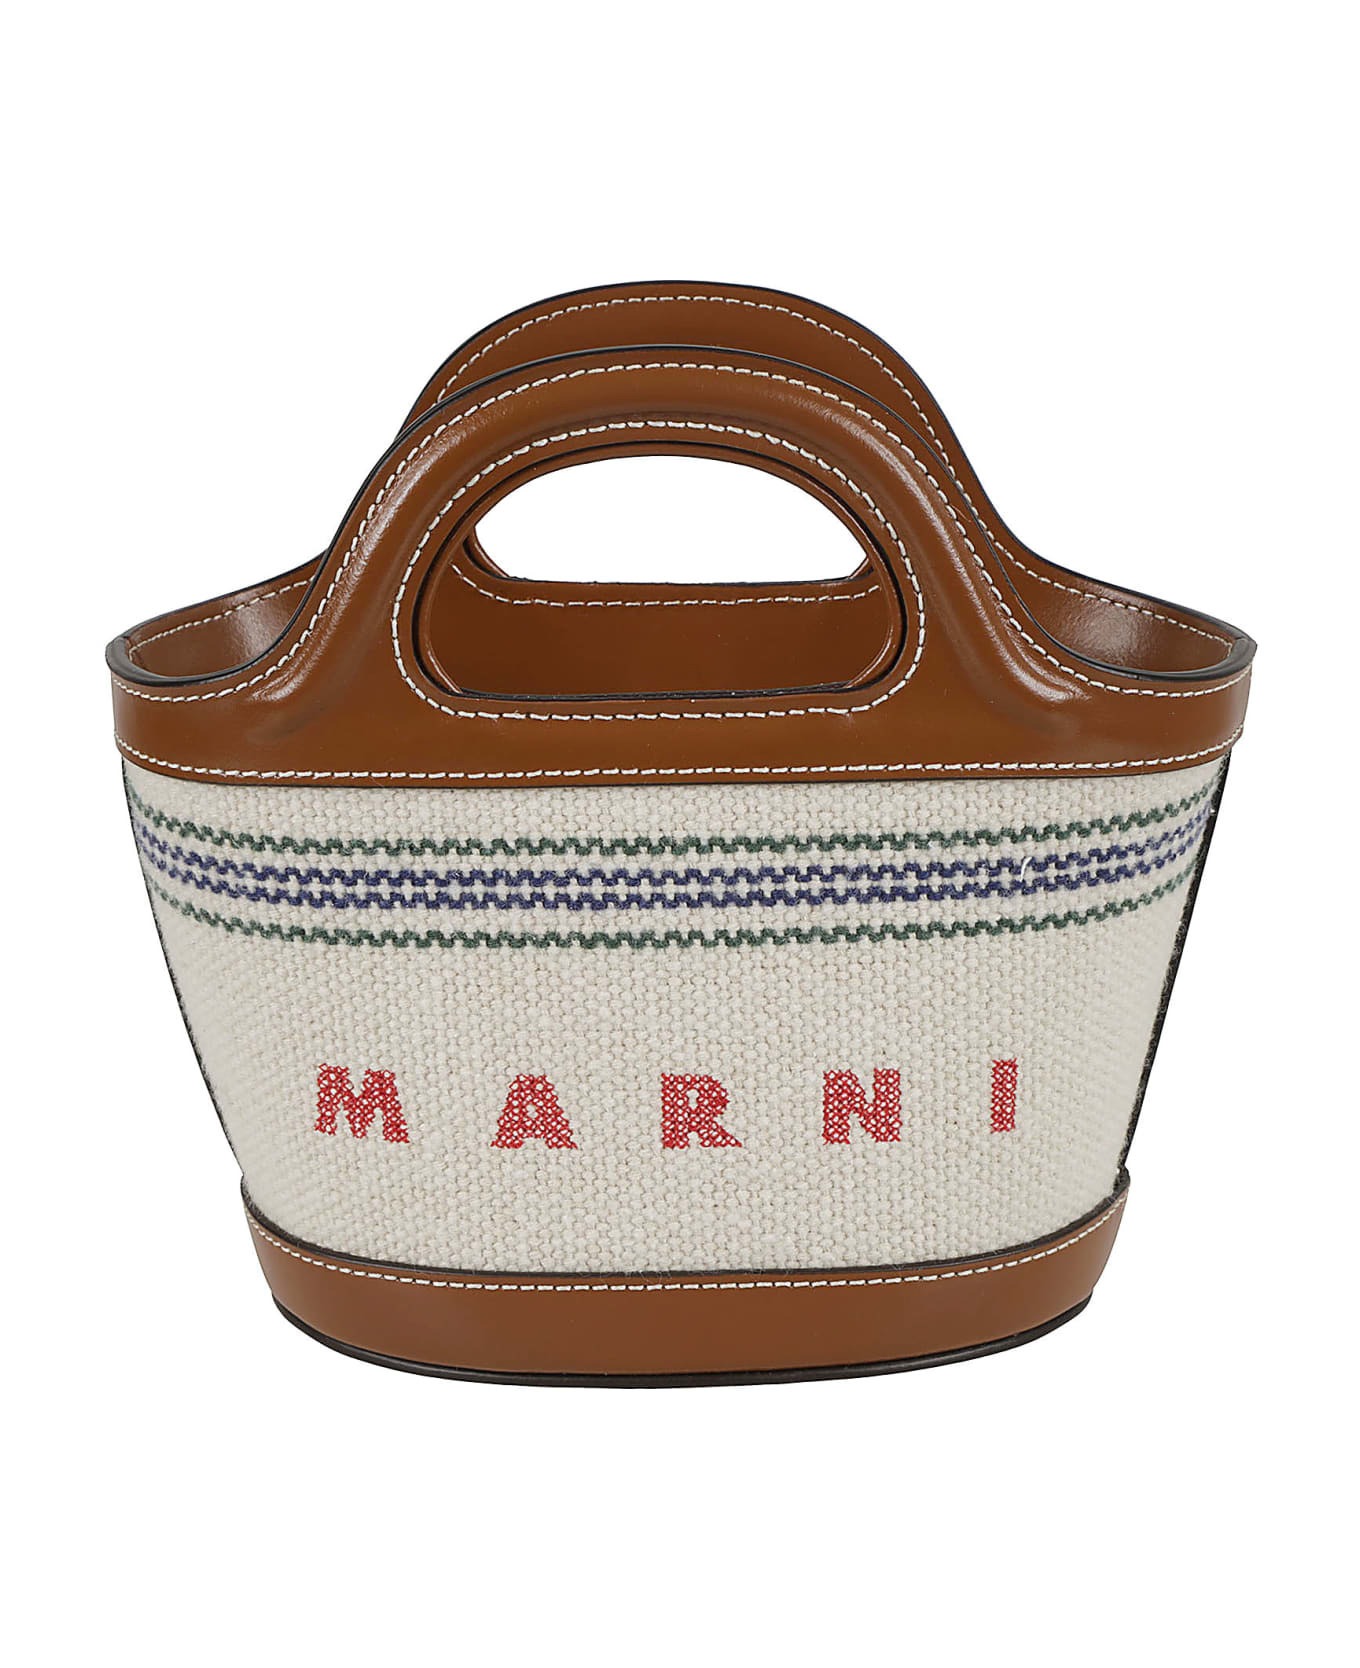 Marni Tropicalia Micro Hand Bag - Natural/Moka